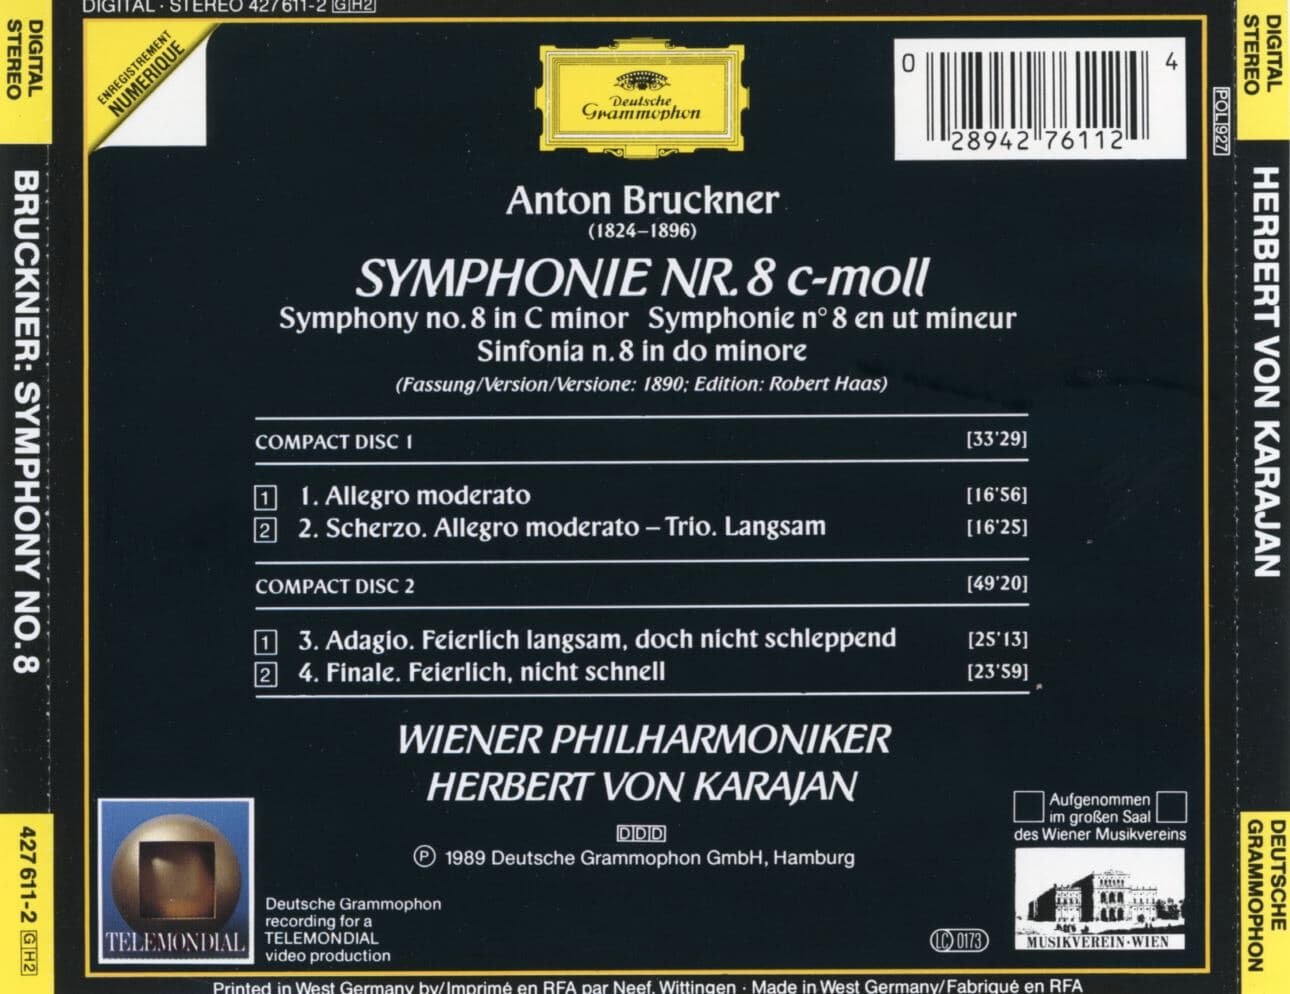 카라얀 - Karajan - Bruckner Symphonie No.8 2Cds [독일발매]